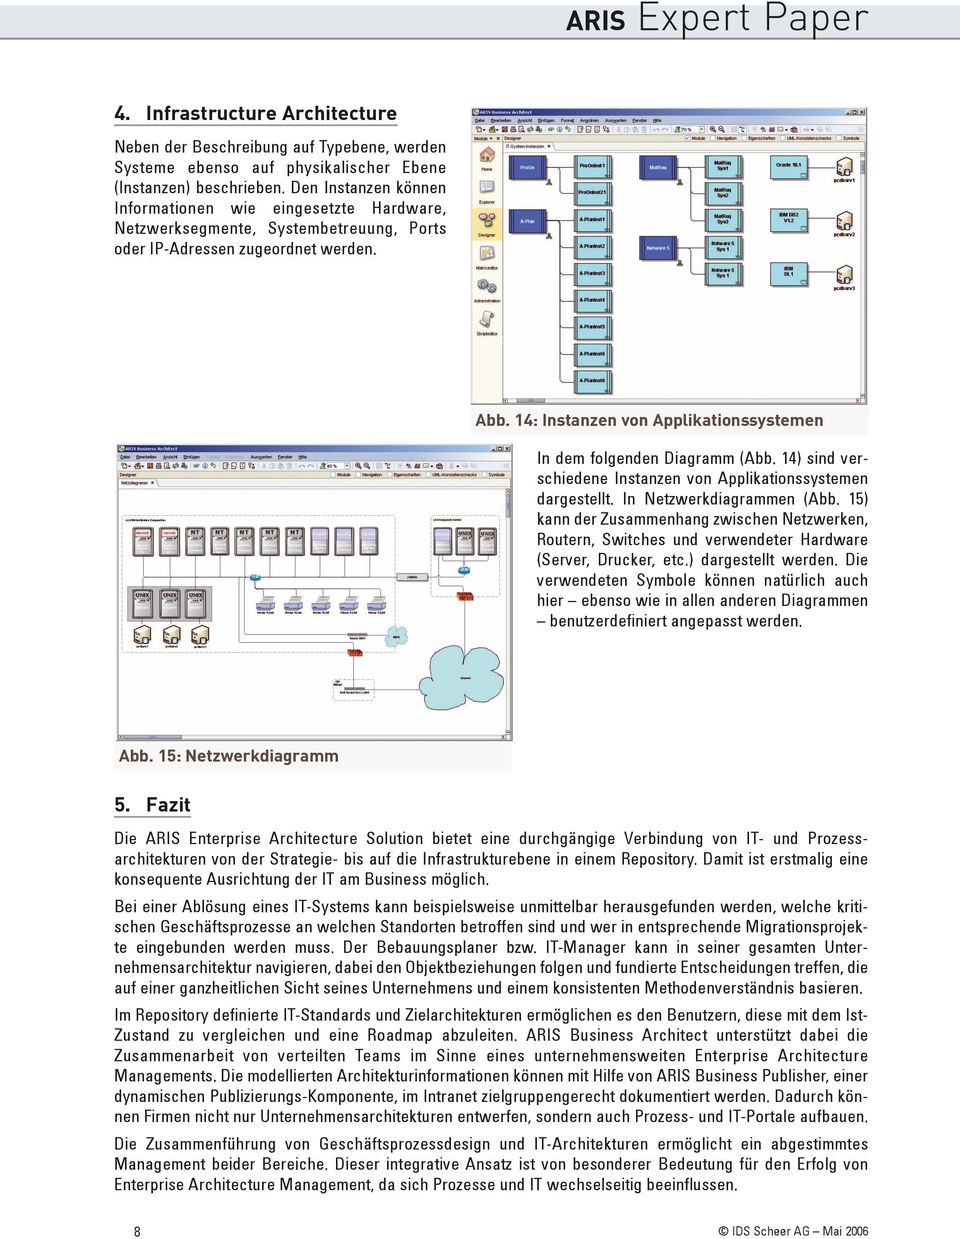 14: Instanzen von Applikationssystemen In dem folgenden Diagramm (Abb. 14) sind verschiedene Instanzen von Applikationssystemen dargestellt. In Netzwerkdiagrammen (Abb.